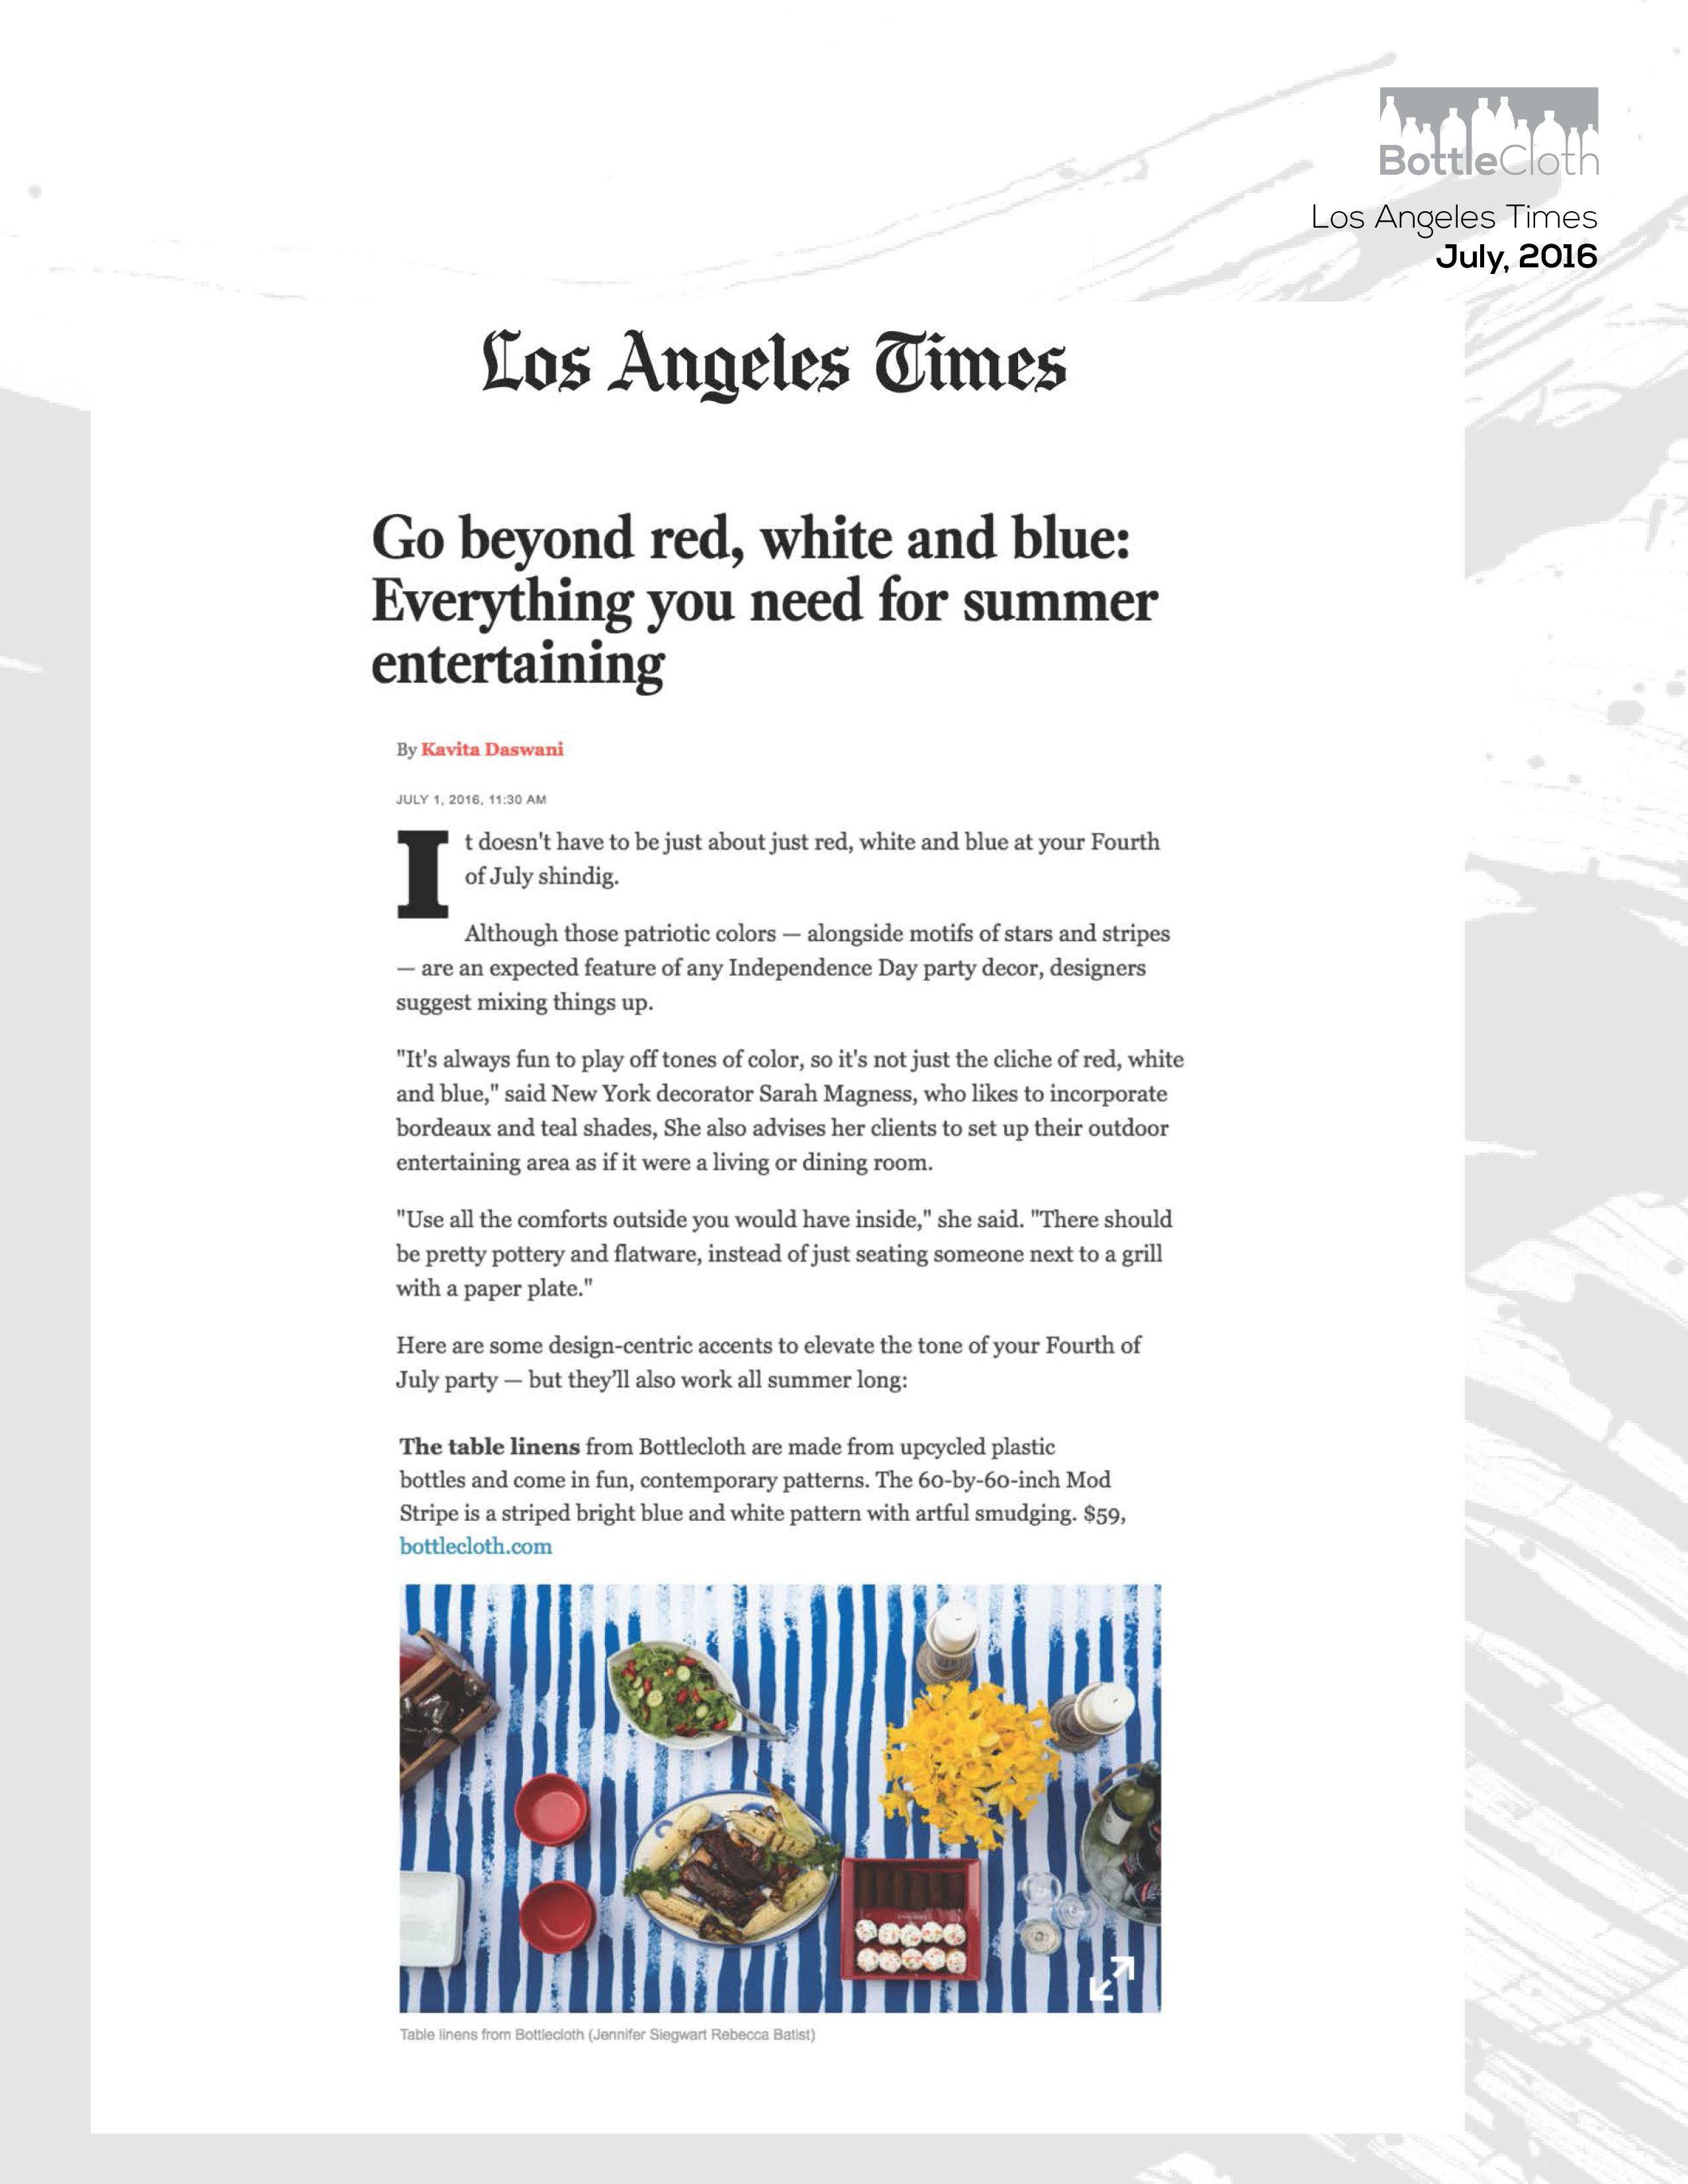 BottleCloth Press - LA Times